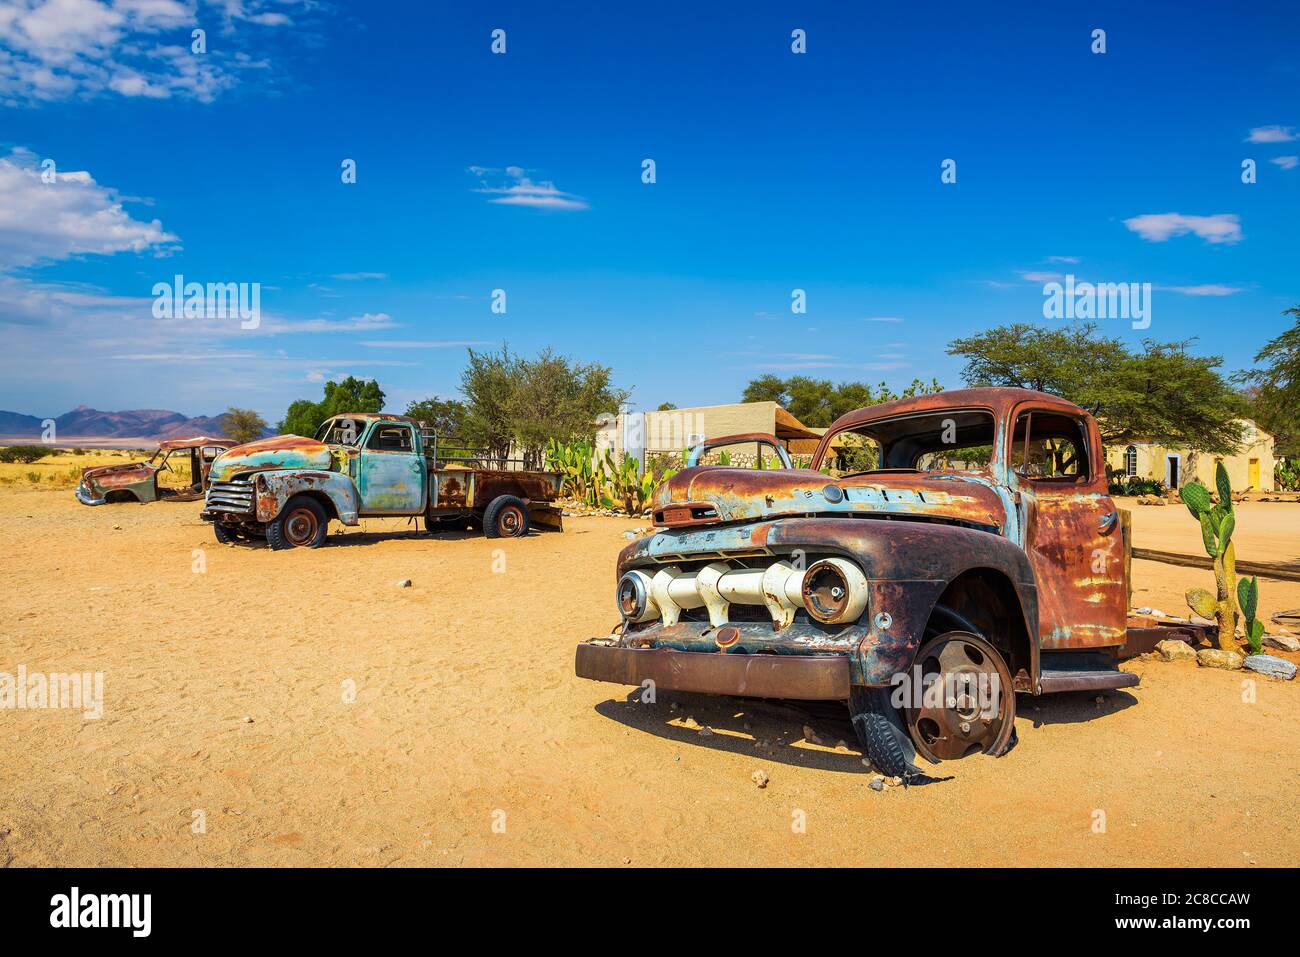 Solitaire, Namibia - 29 marzo 2019 : relitti di automobili abbandonati vicino alla stazione di servizio Solitaire situata nel deserto Namibia. Foto Stock